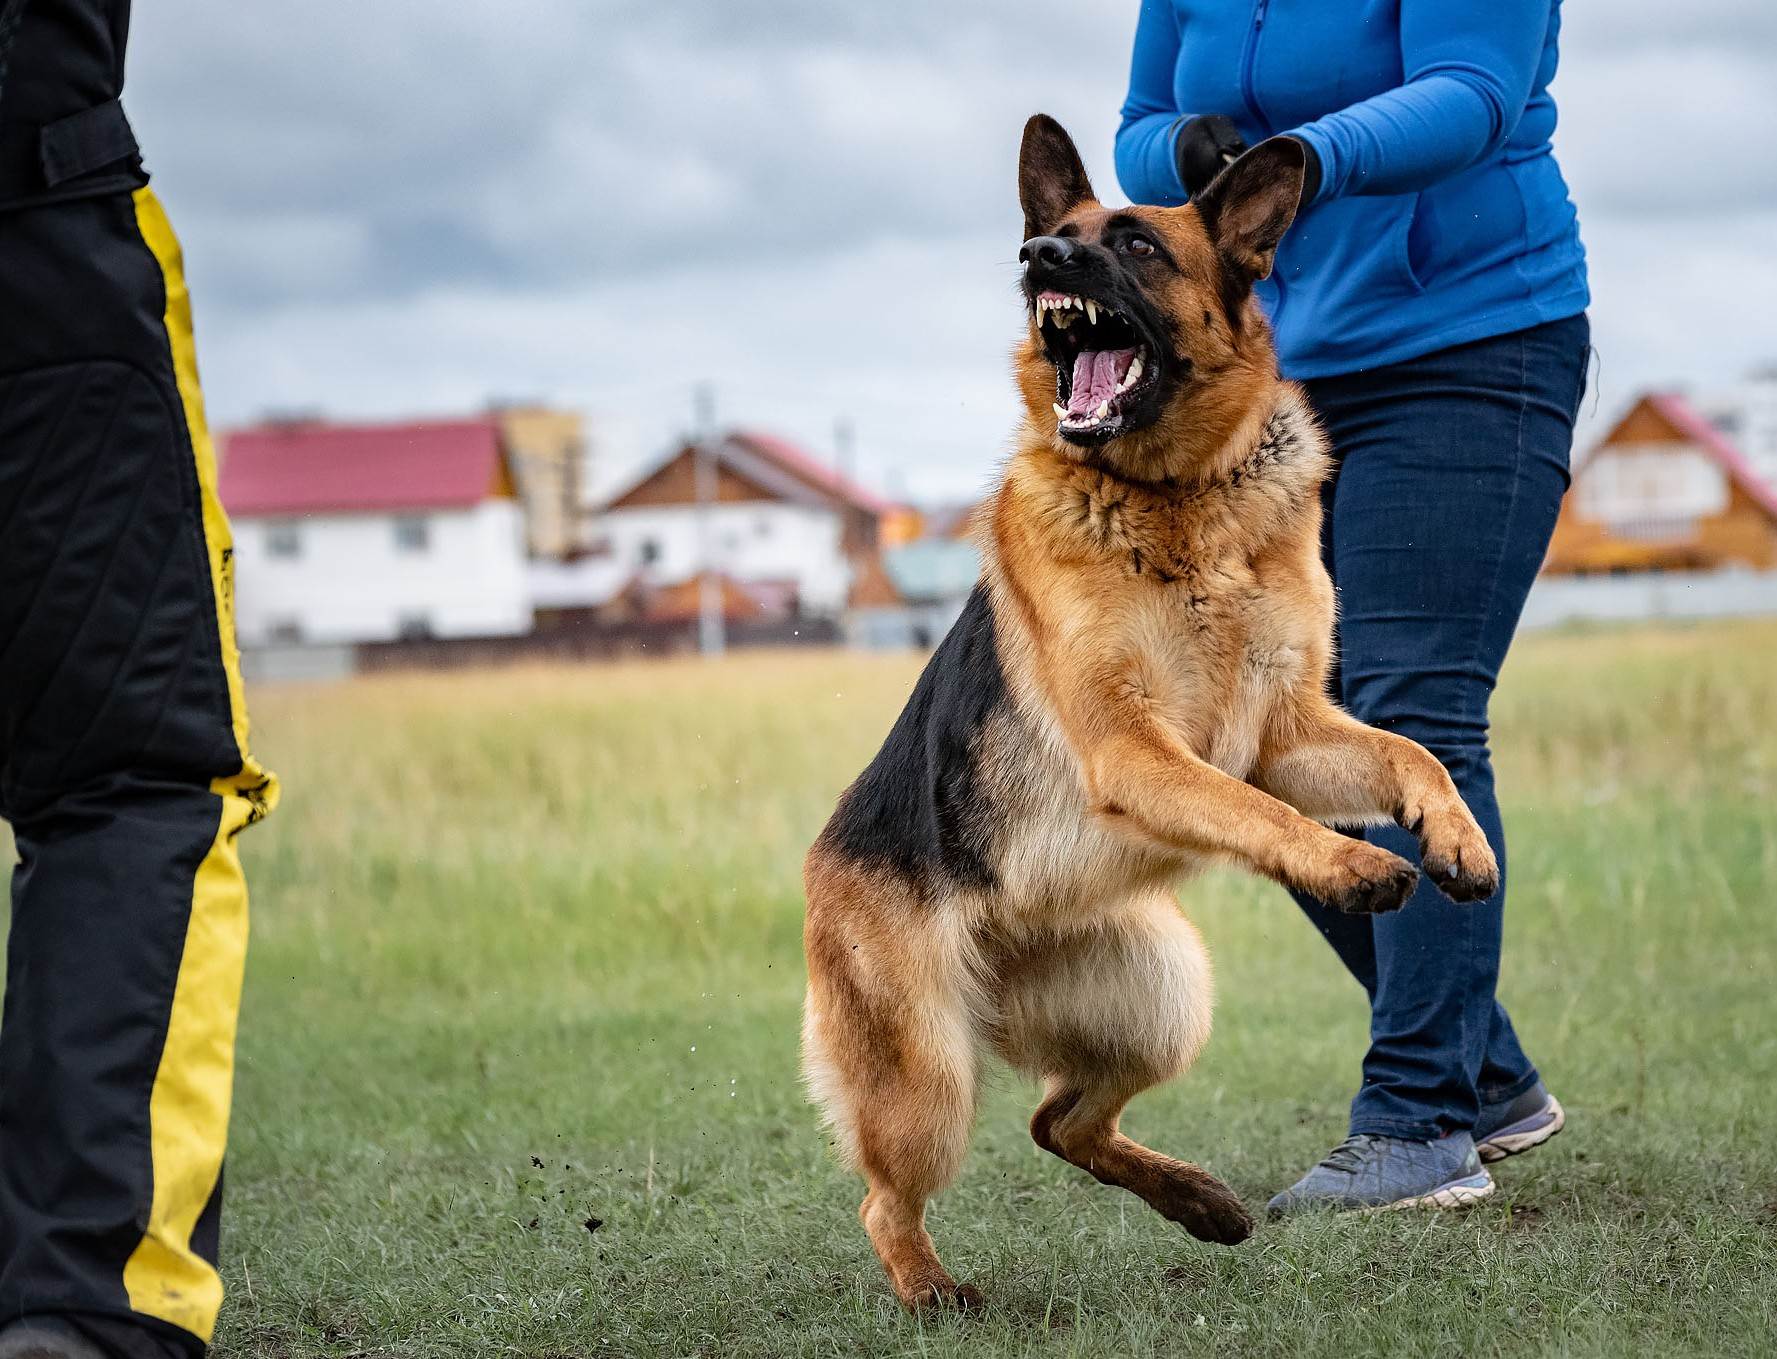 Команды для собак: список и как научить жестами, для выполнения и дрессировки